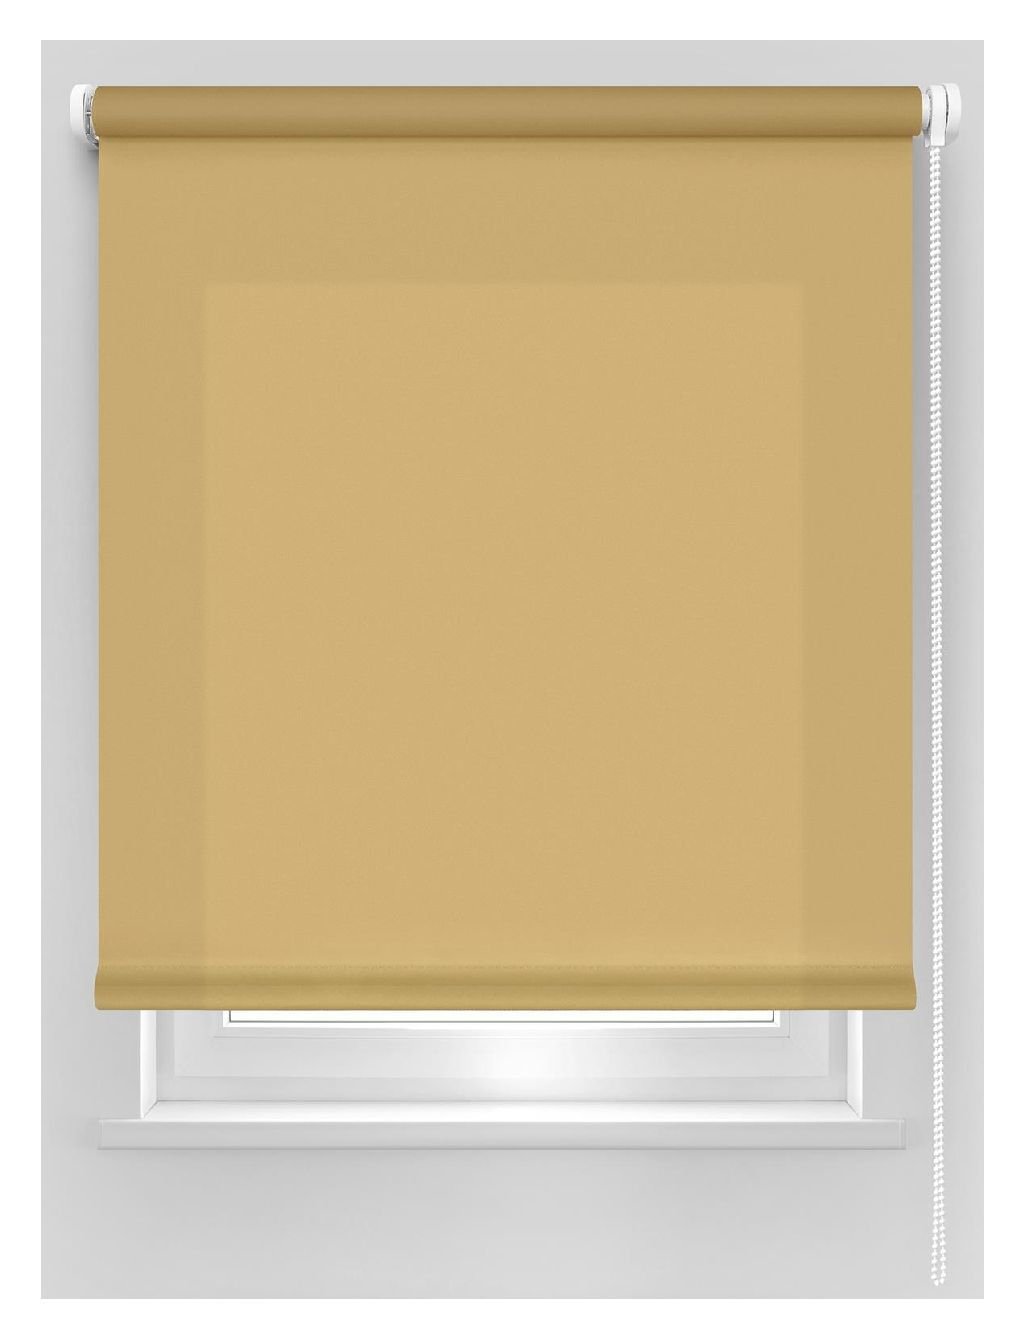 Klasikinė ritininė užuolaida DEKORIKA, šv. rudos sp., Ø 25 mm, 200 x 175 cm, 100 % PES - 1